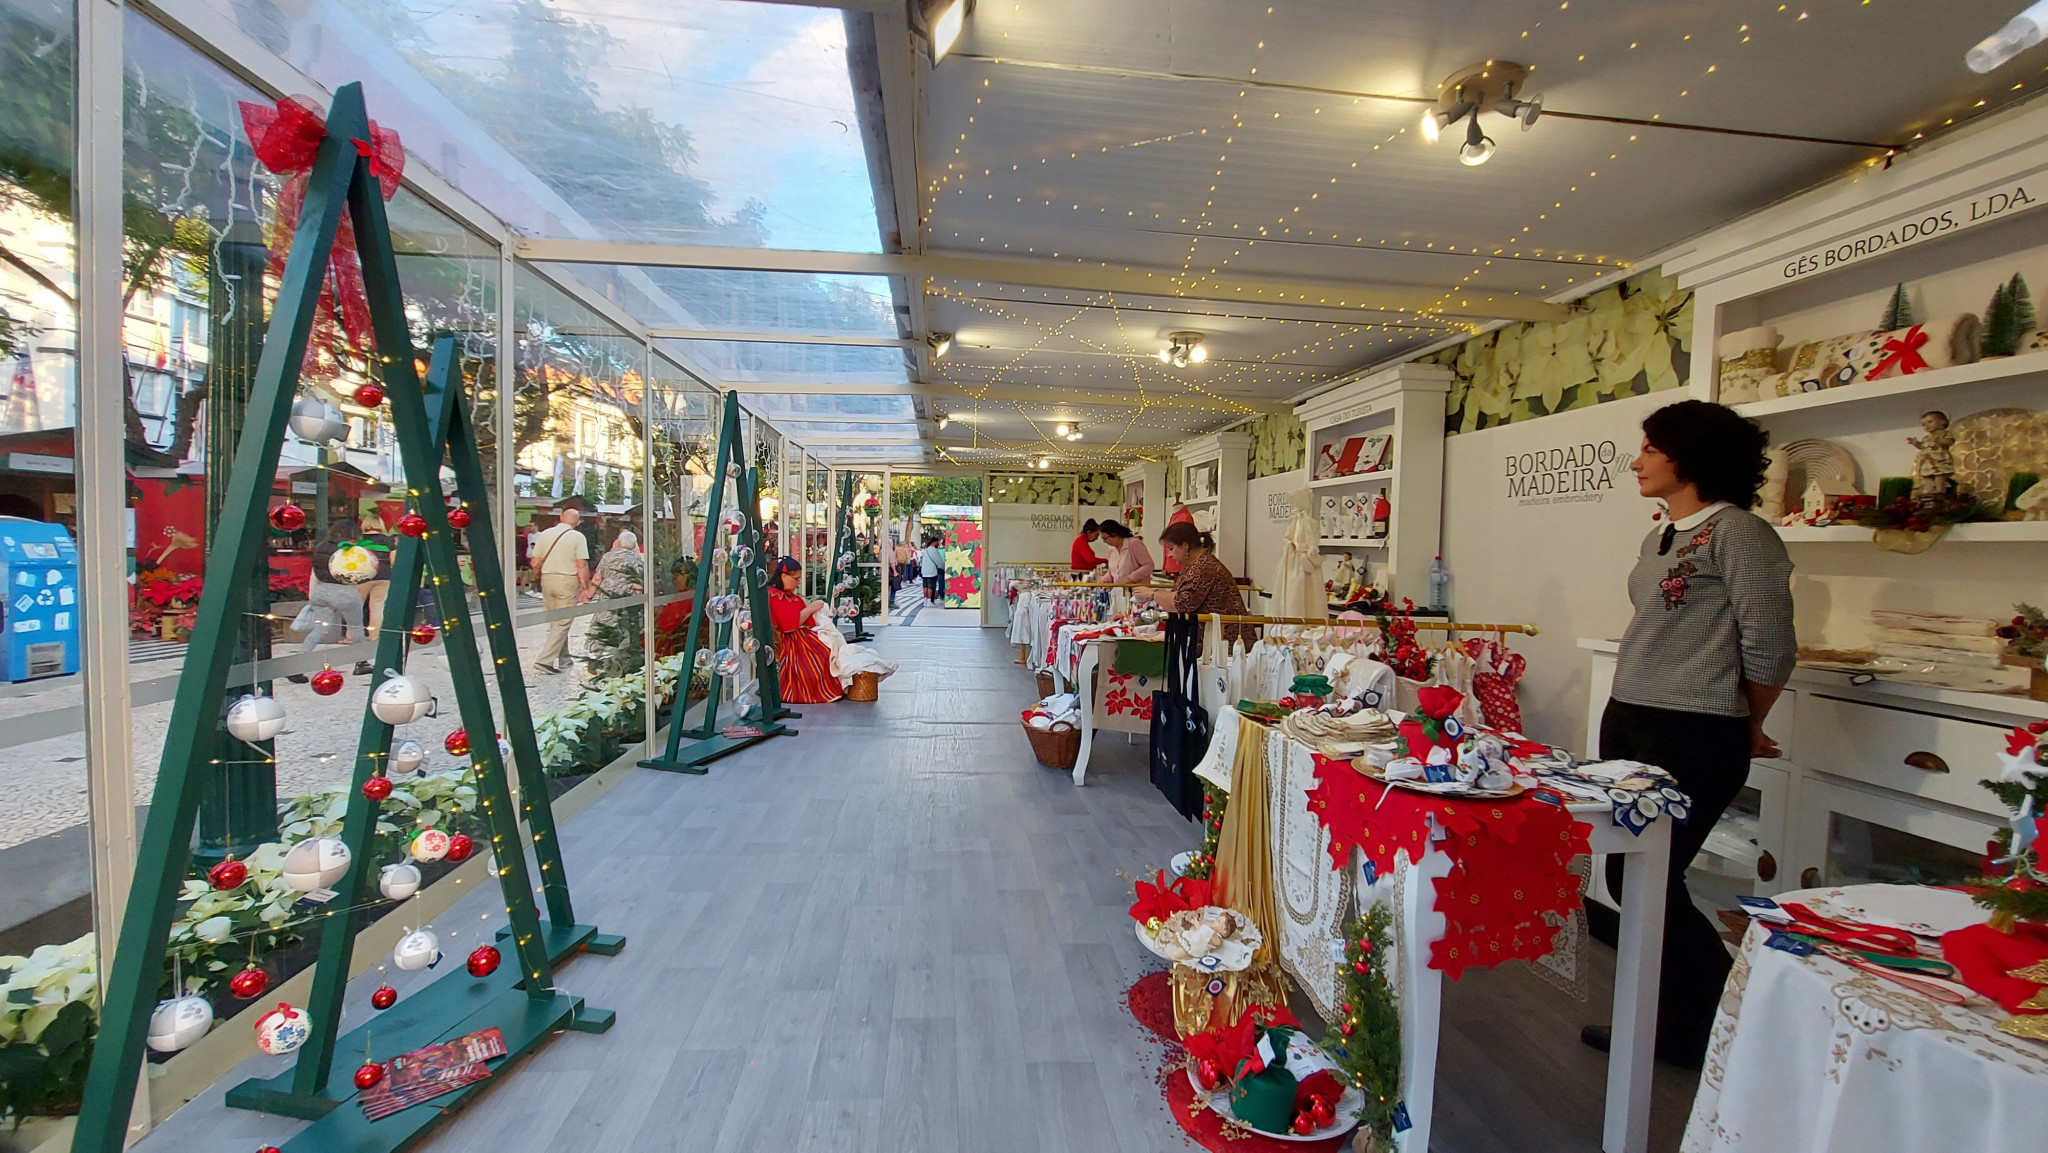 Pavilhão do Bordado e do Artesanato da Madeira, nas Festividades de Natal e Fim do Ano, na Placa central da Avenida Arriaga